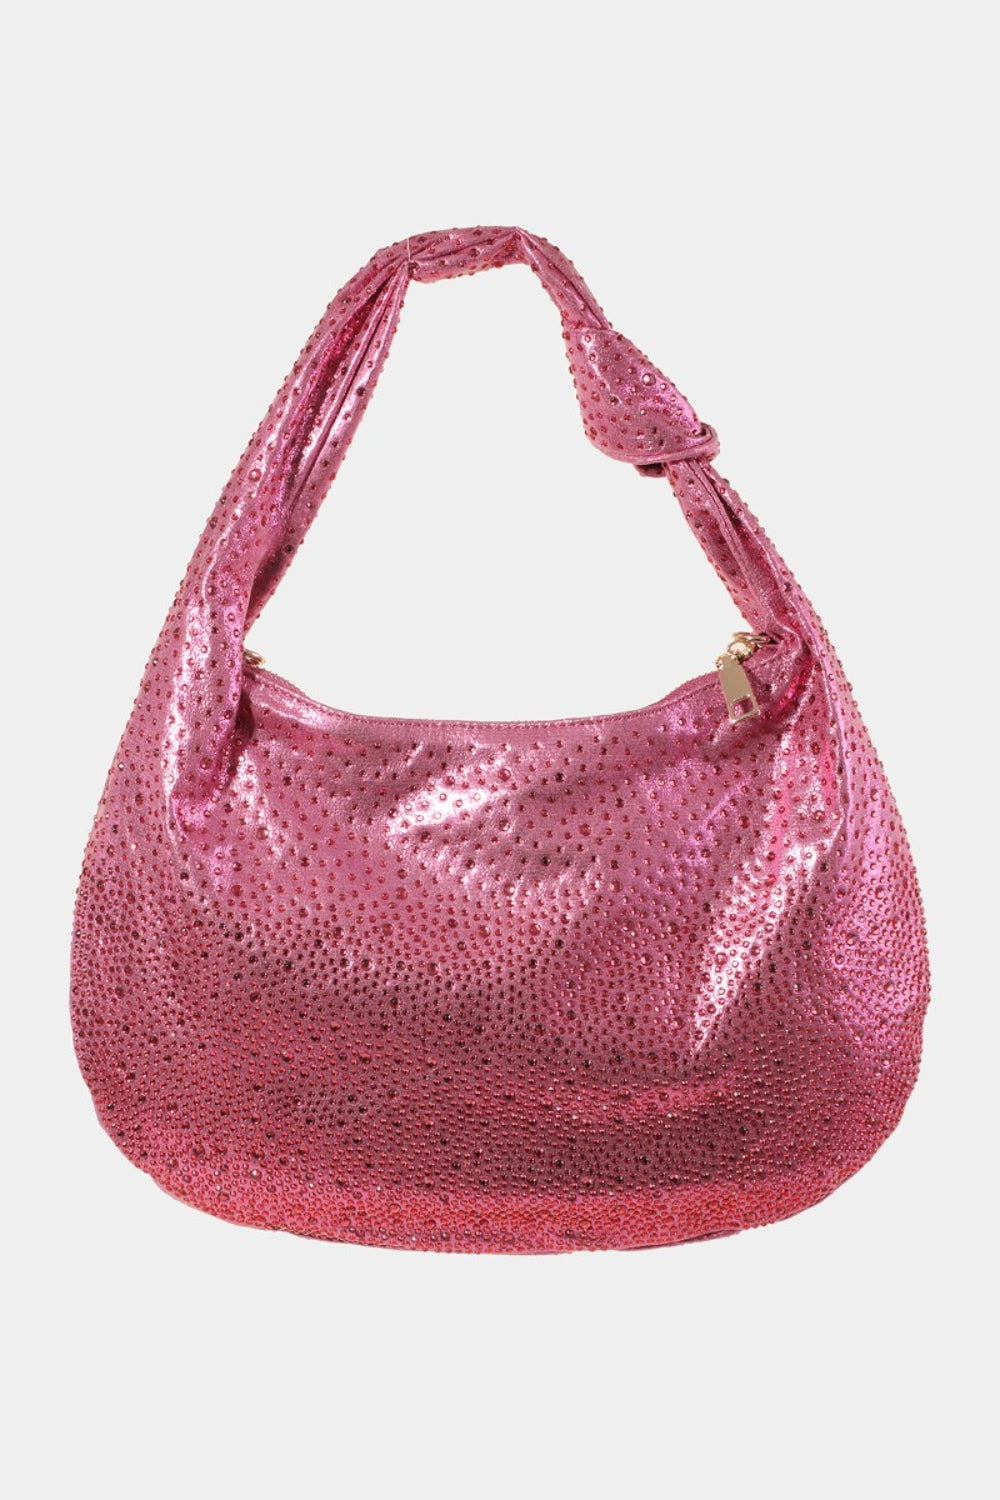 Fame Rhinestone Studded Handbag Fuchsia One Size 